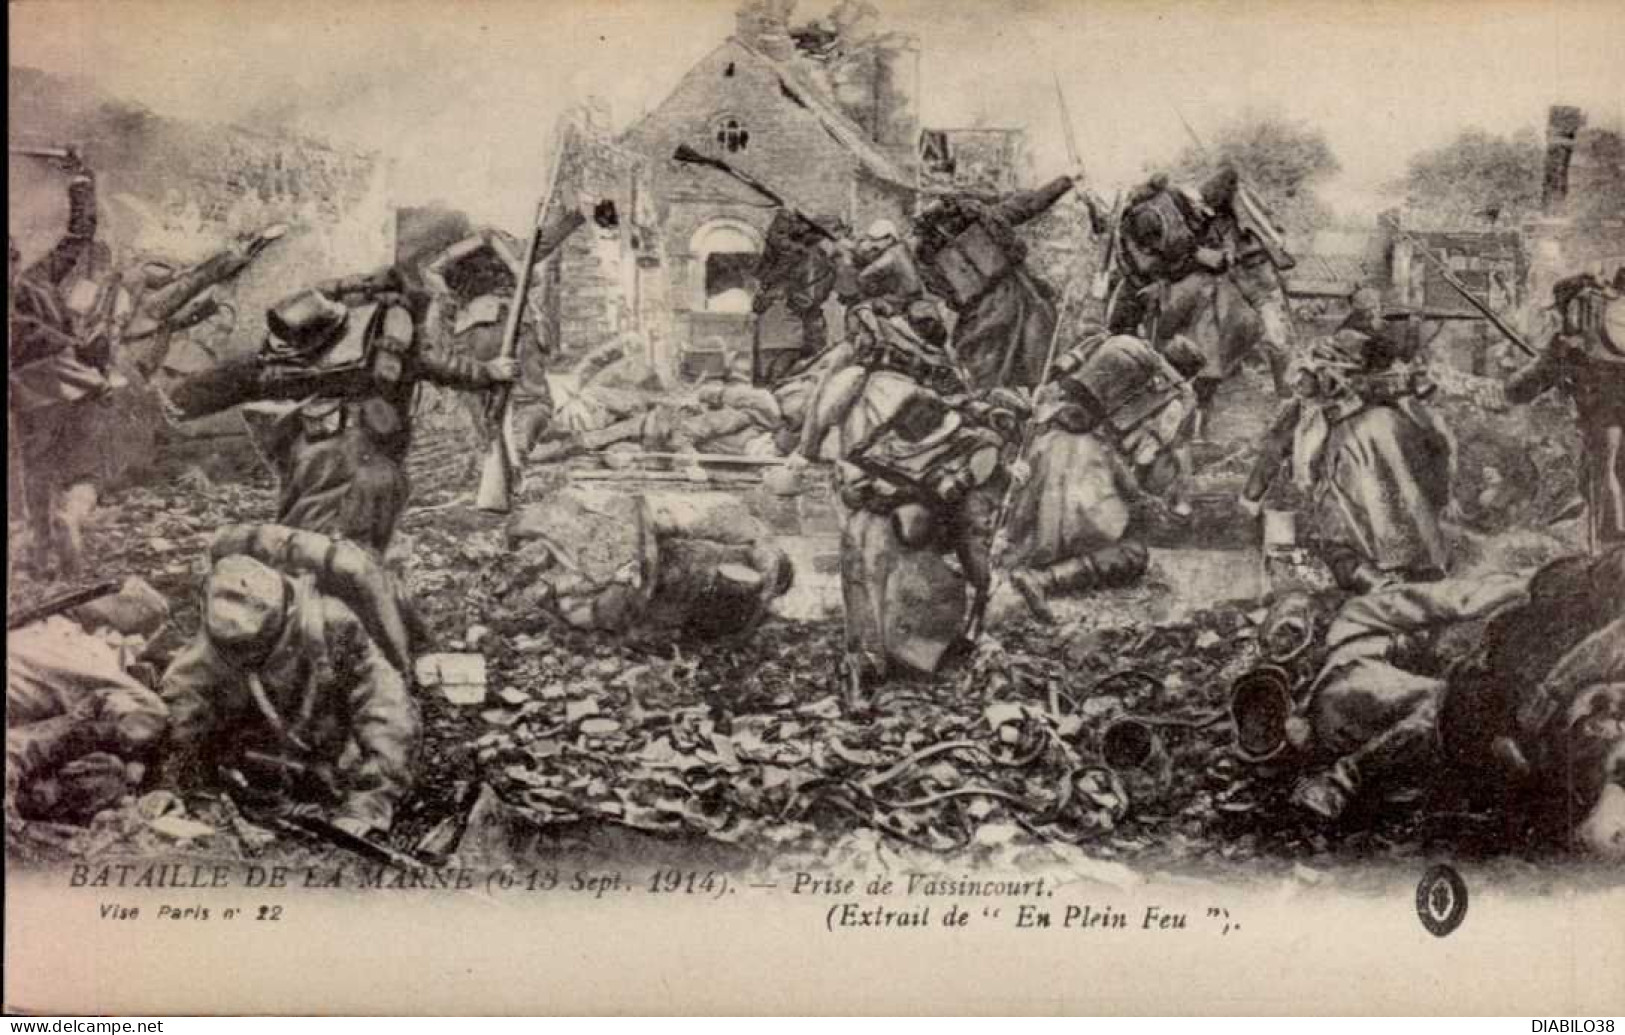 BATAILLE DE LA MARNE   ( 6 - 13 SEPTEMBRE 1914 )  PRISE DE VASSINCOURT - Guerre 1914-18